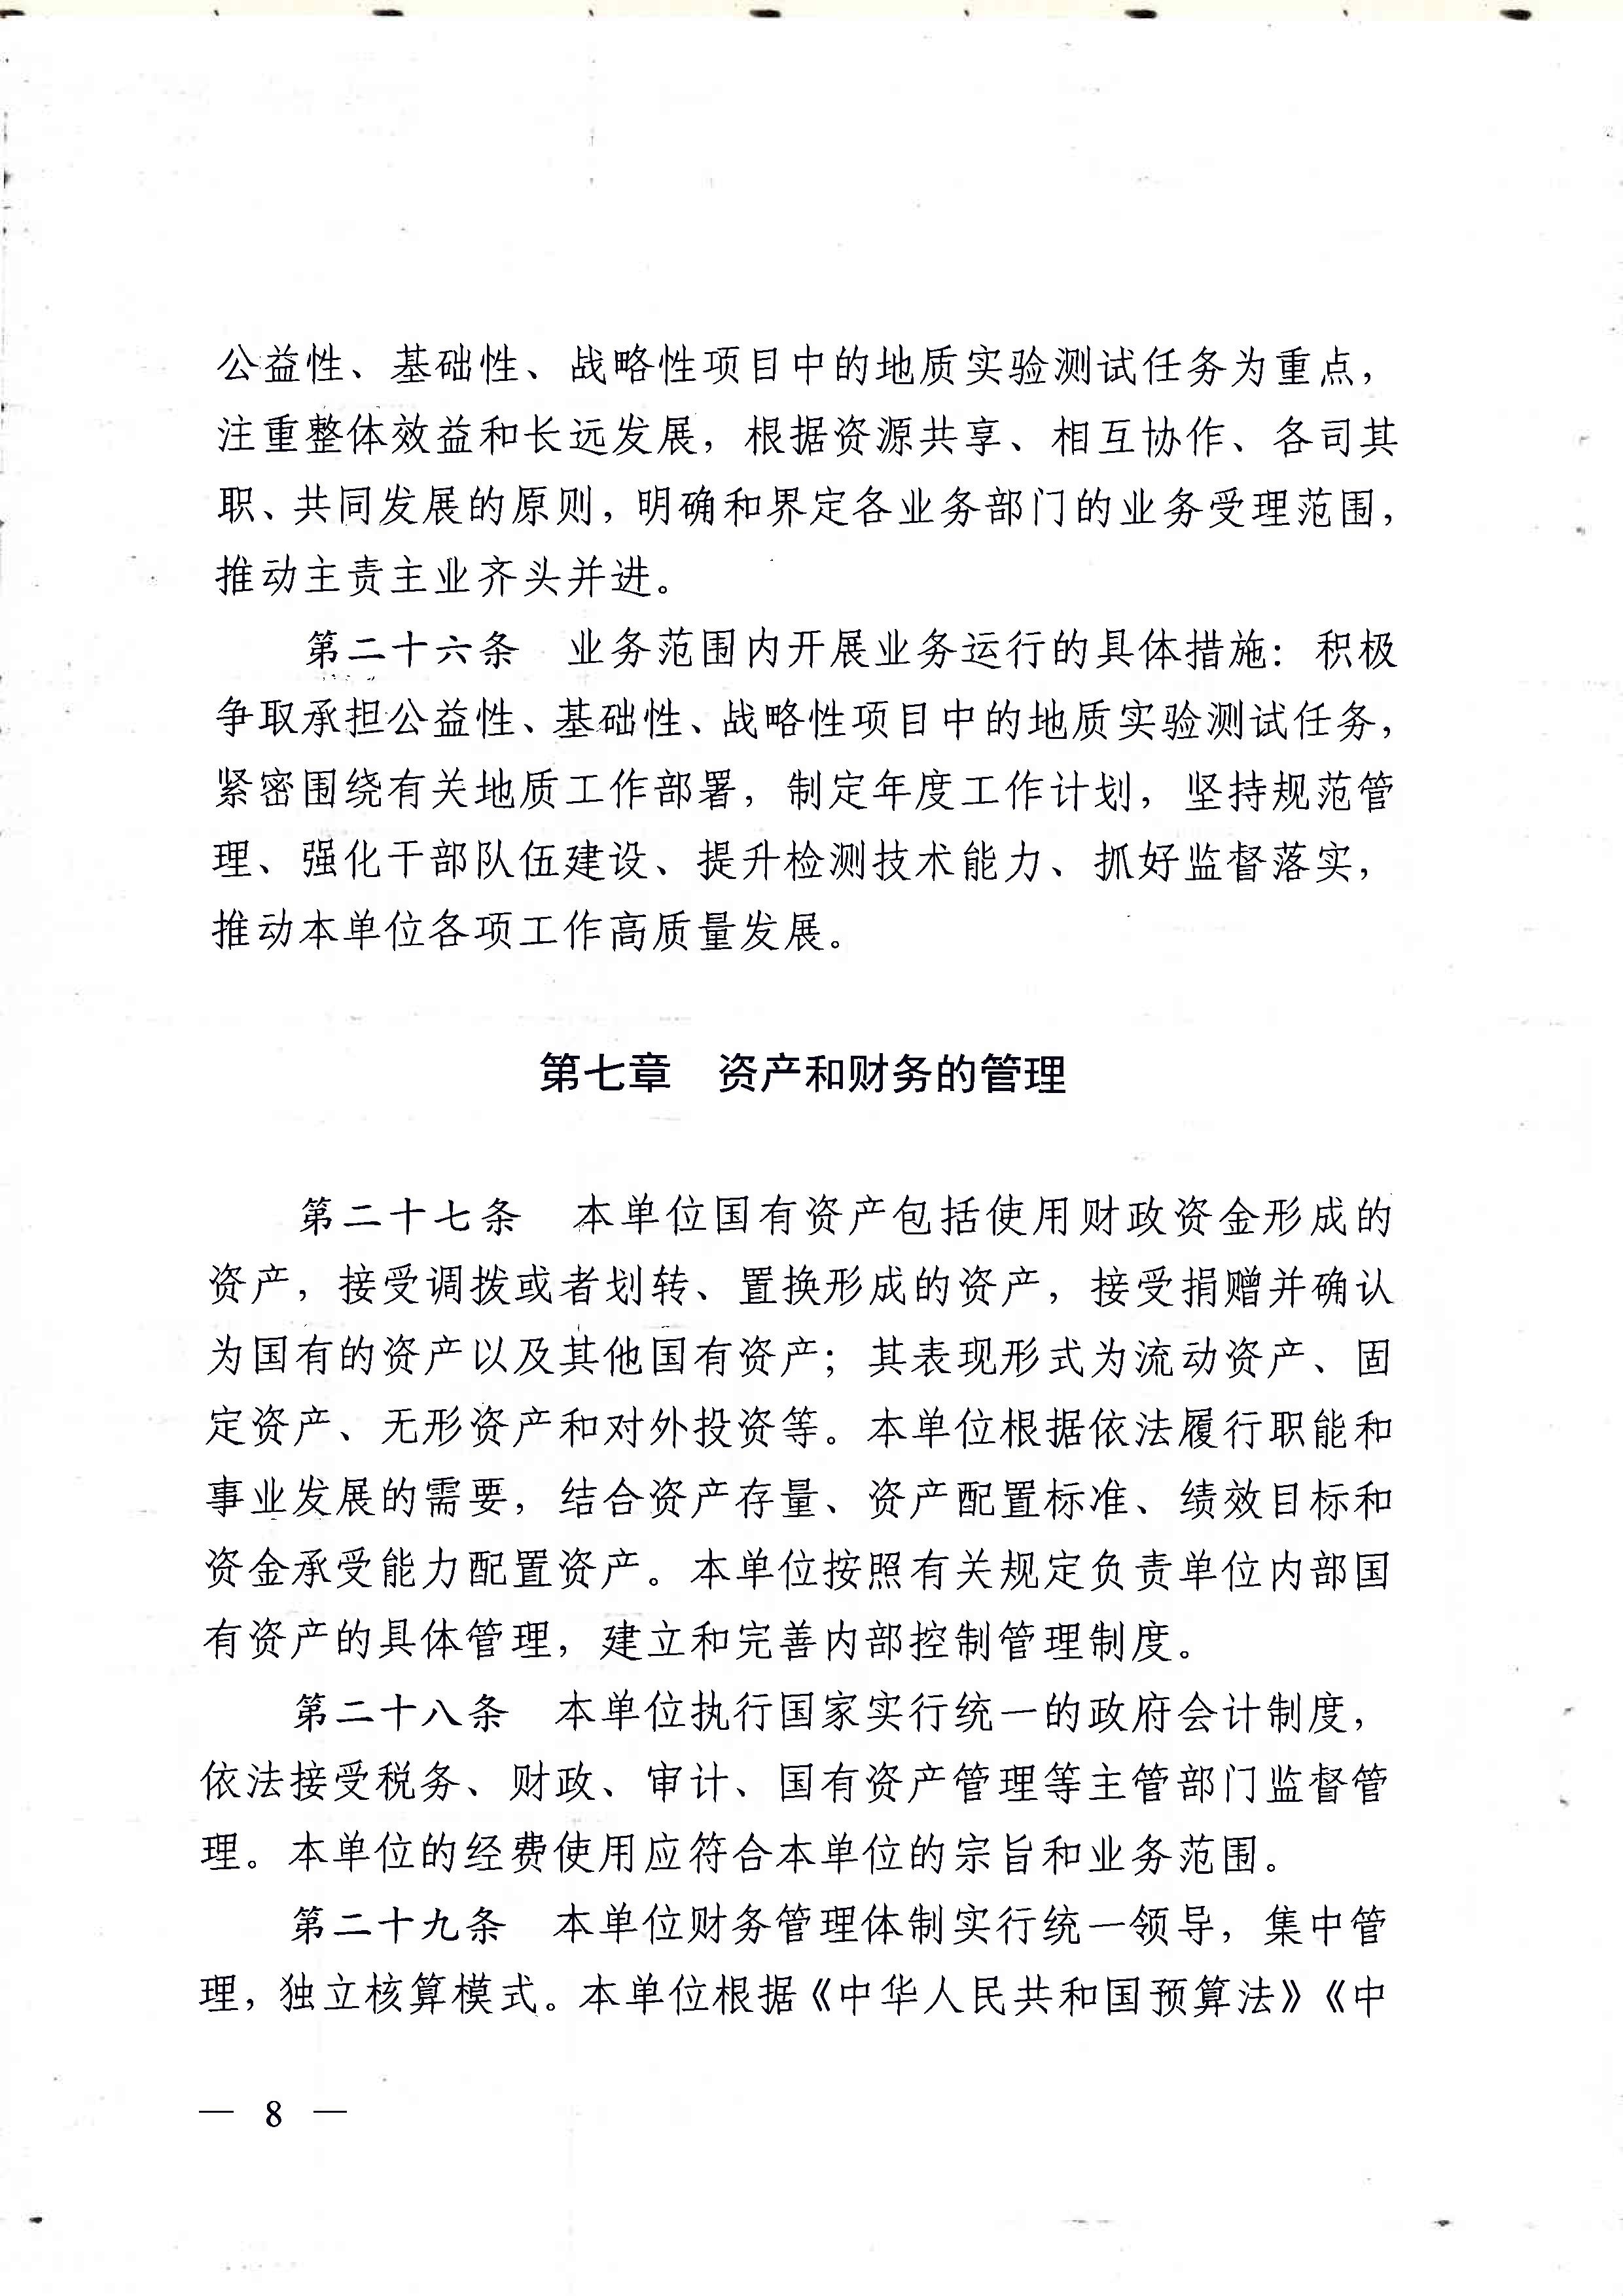 广东省地质实验测试中心事业单位章程 - 0008.jpg